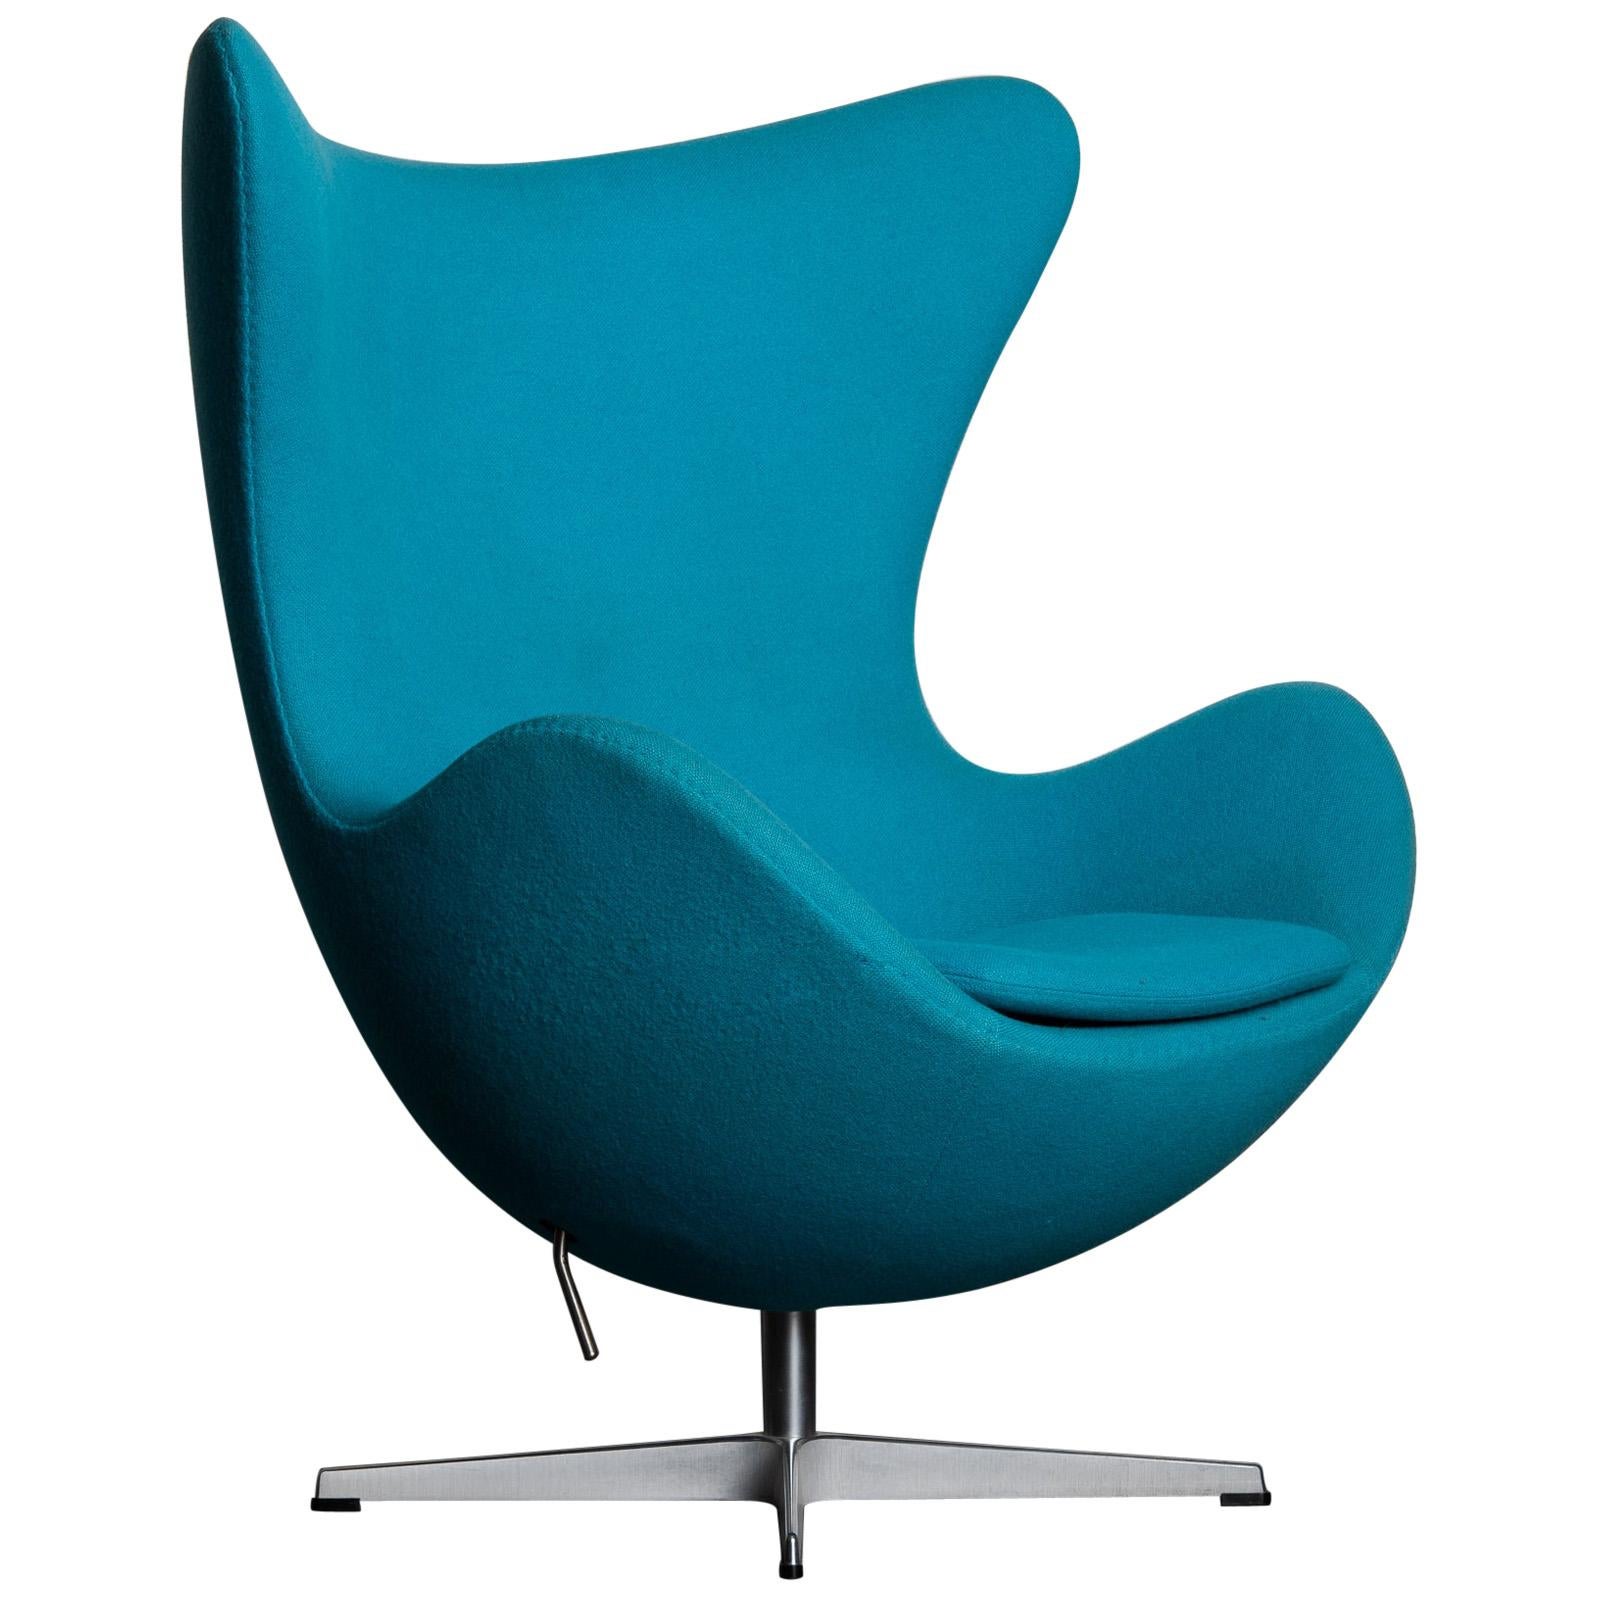 'Egg' Swivel Chair by Arne Jacobsen for Fritz Hansen, Signed